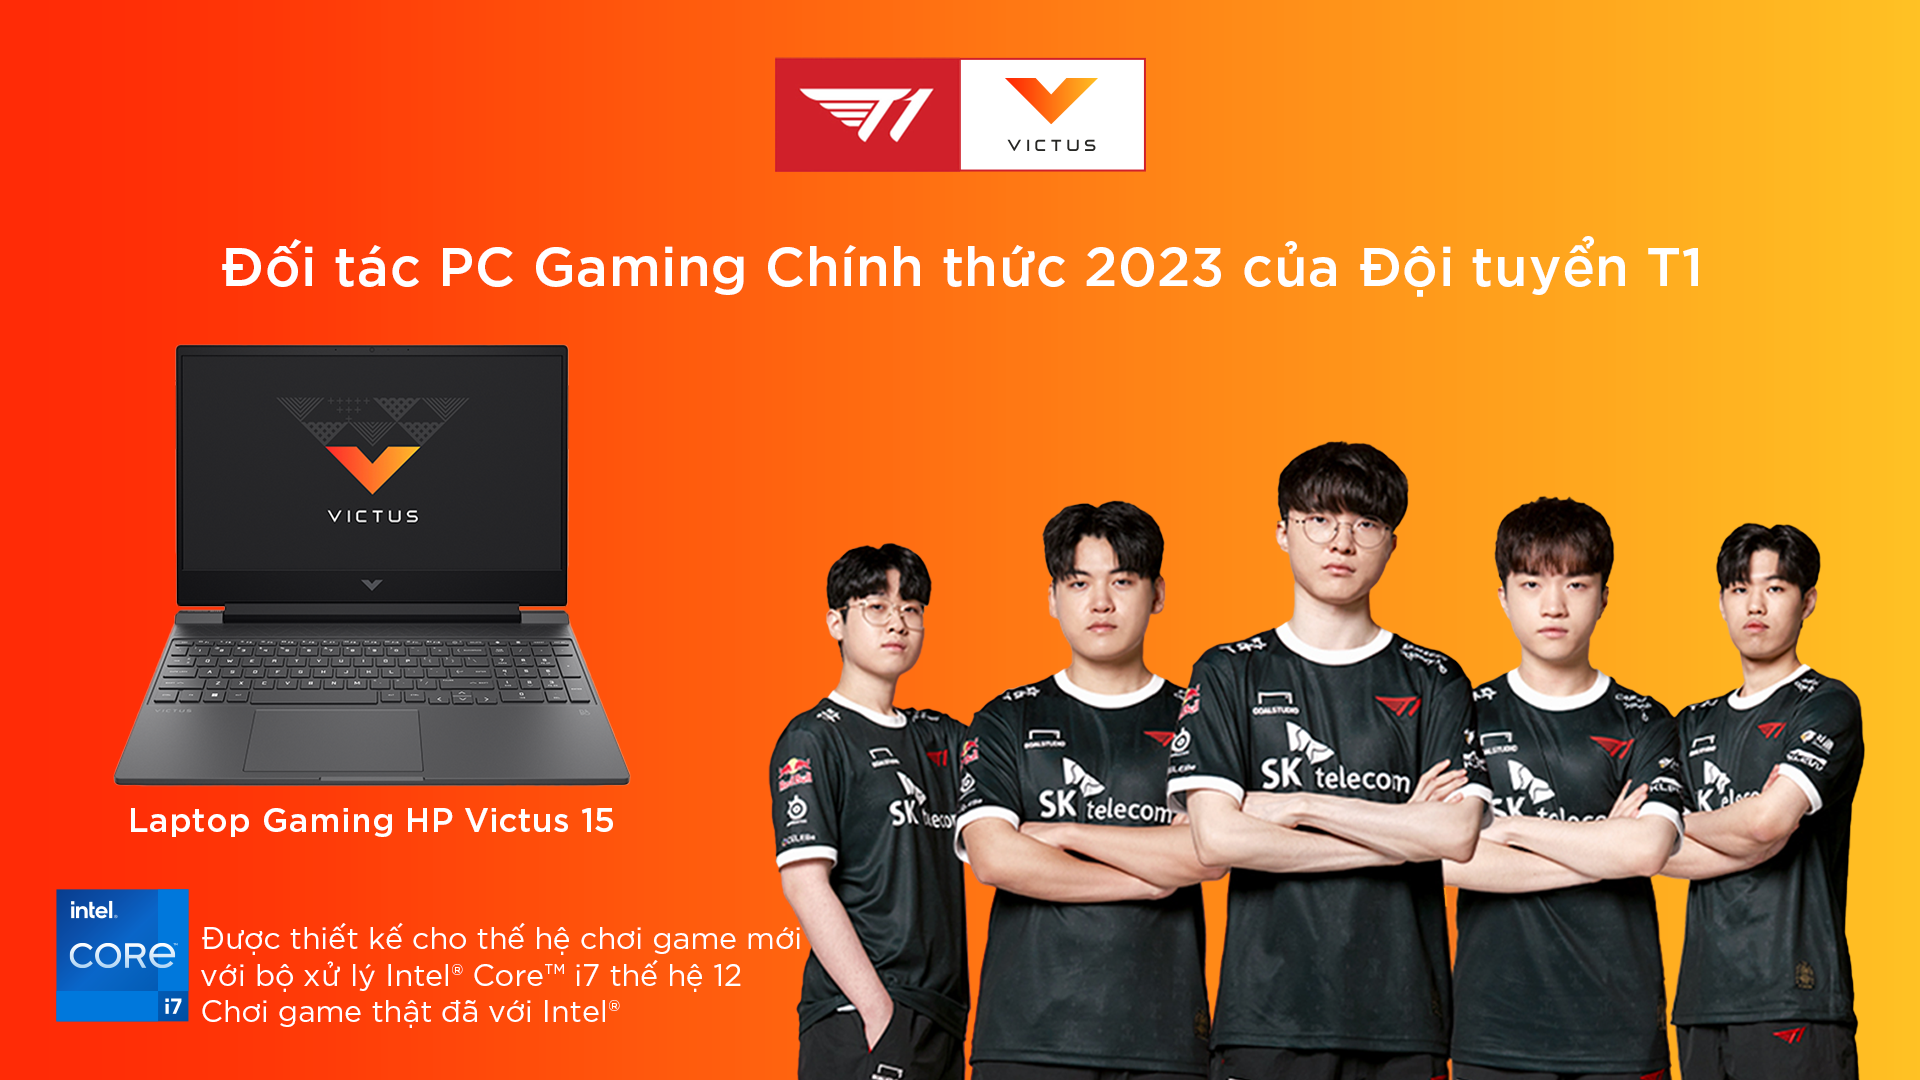 HP Victus là đối tác PC gaming chính thức 2023 của đội tuyển T1 - Ảnh 1.